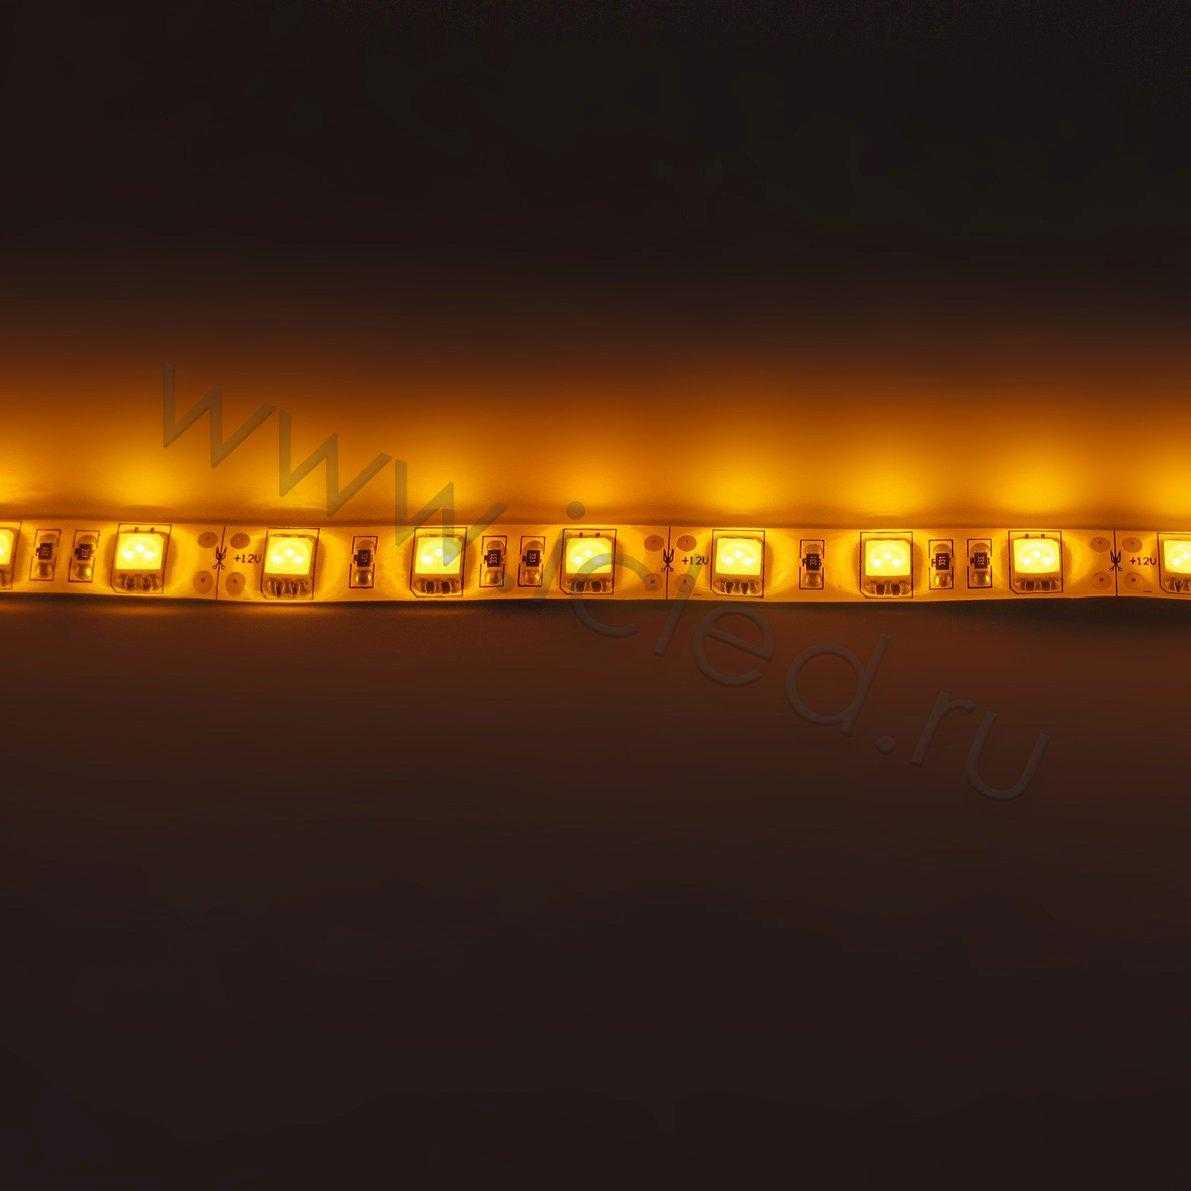 Влагозащищенные светодиодные ленты Светодиодная лента Standart PRO class, 5050, 60led/m, Yellow, 12V, IP65 Icled